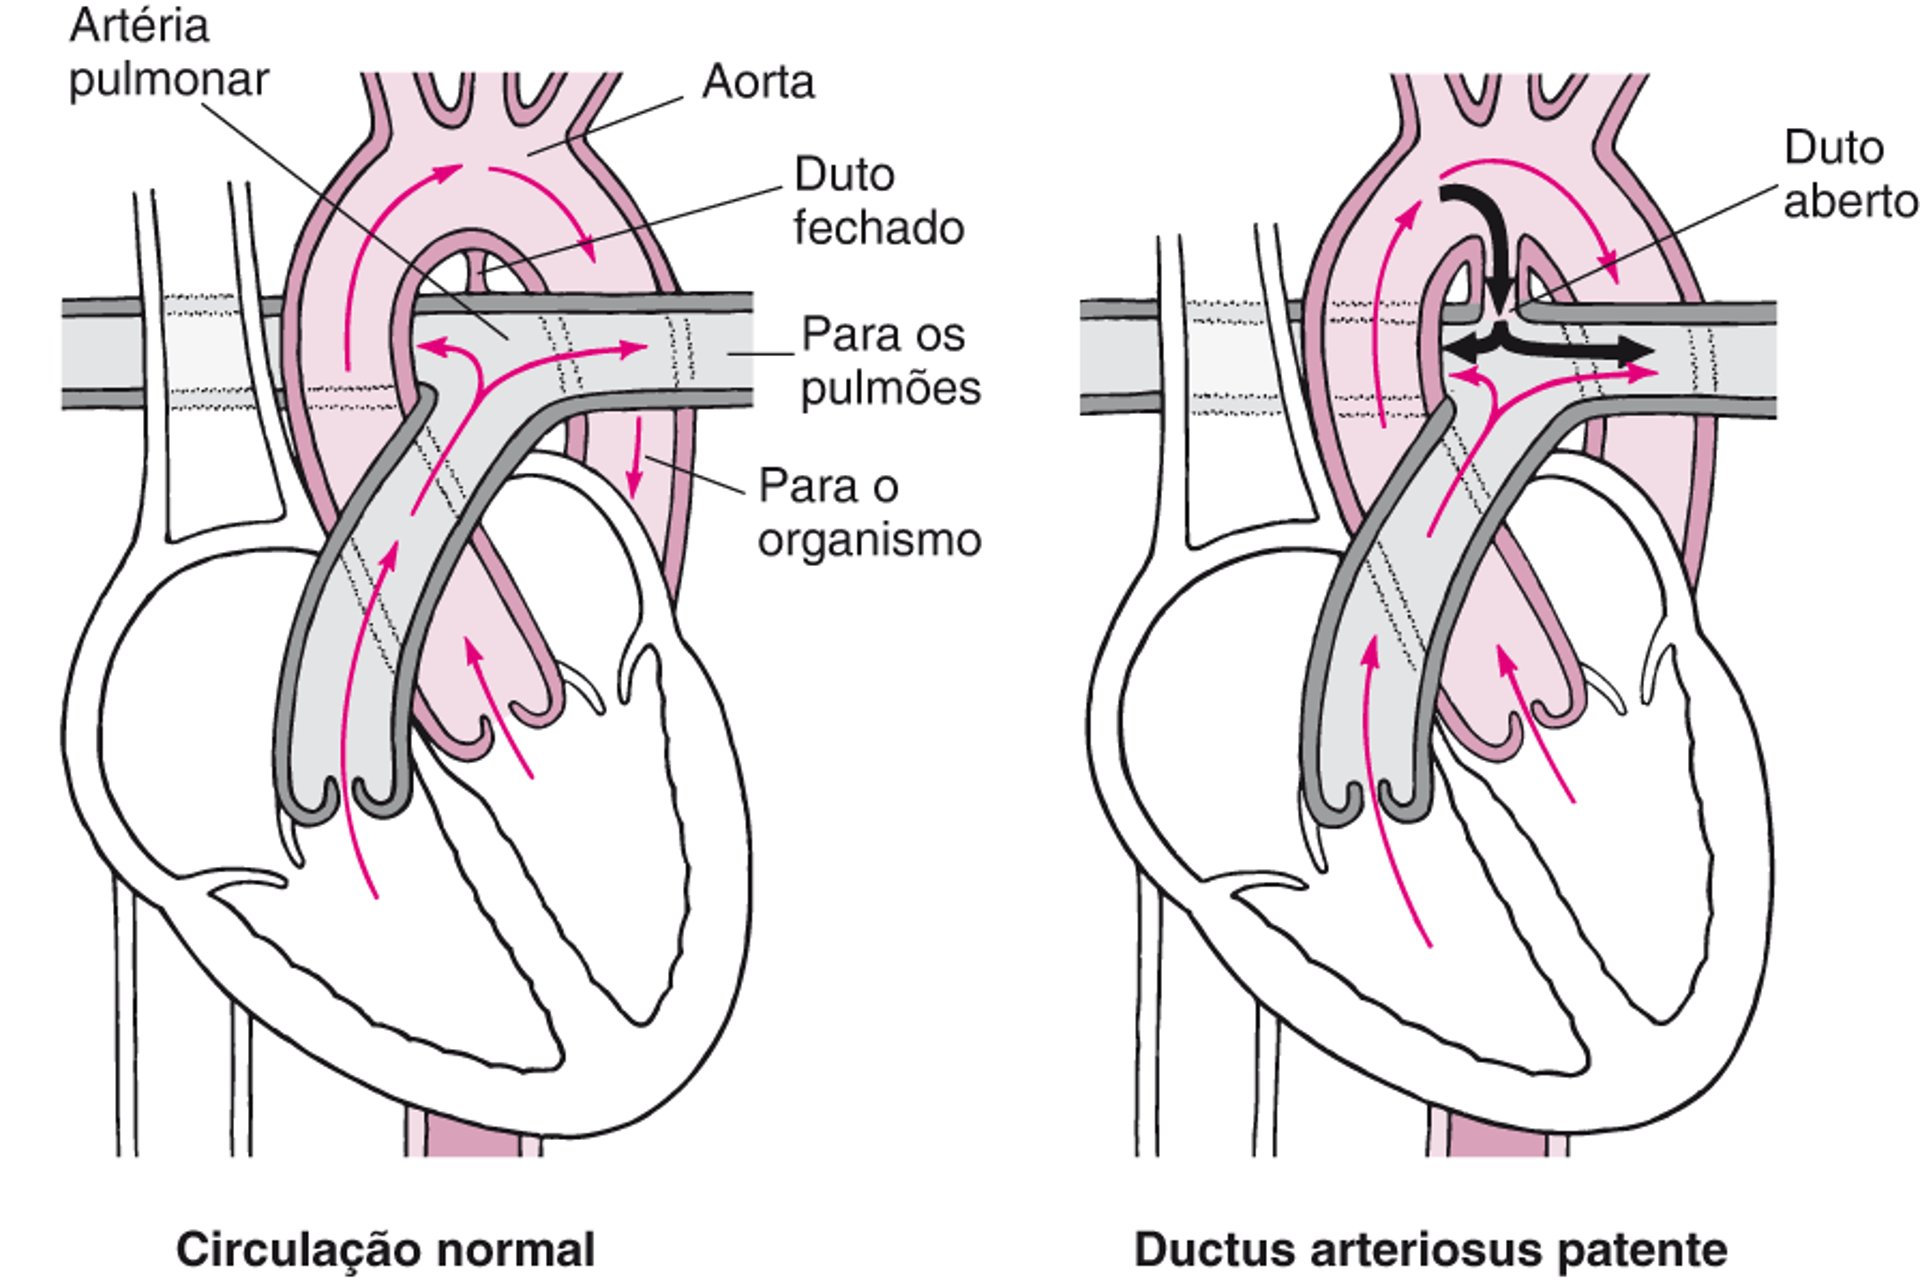 Duto arterioso patente: O duto não fecha